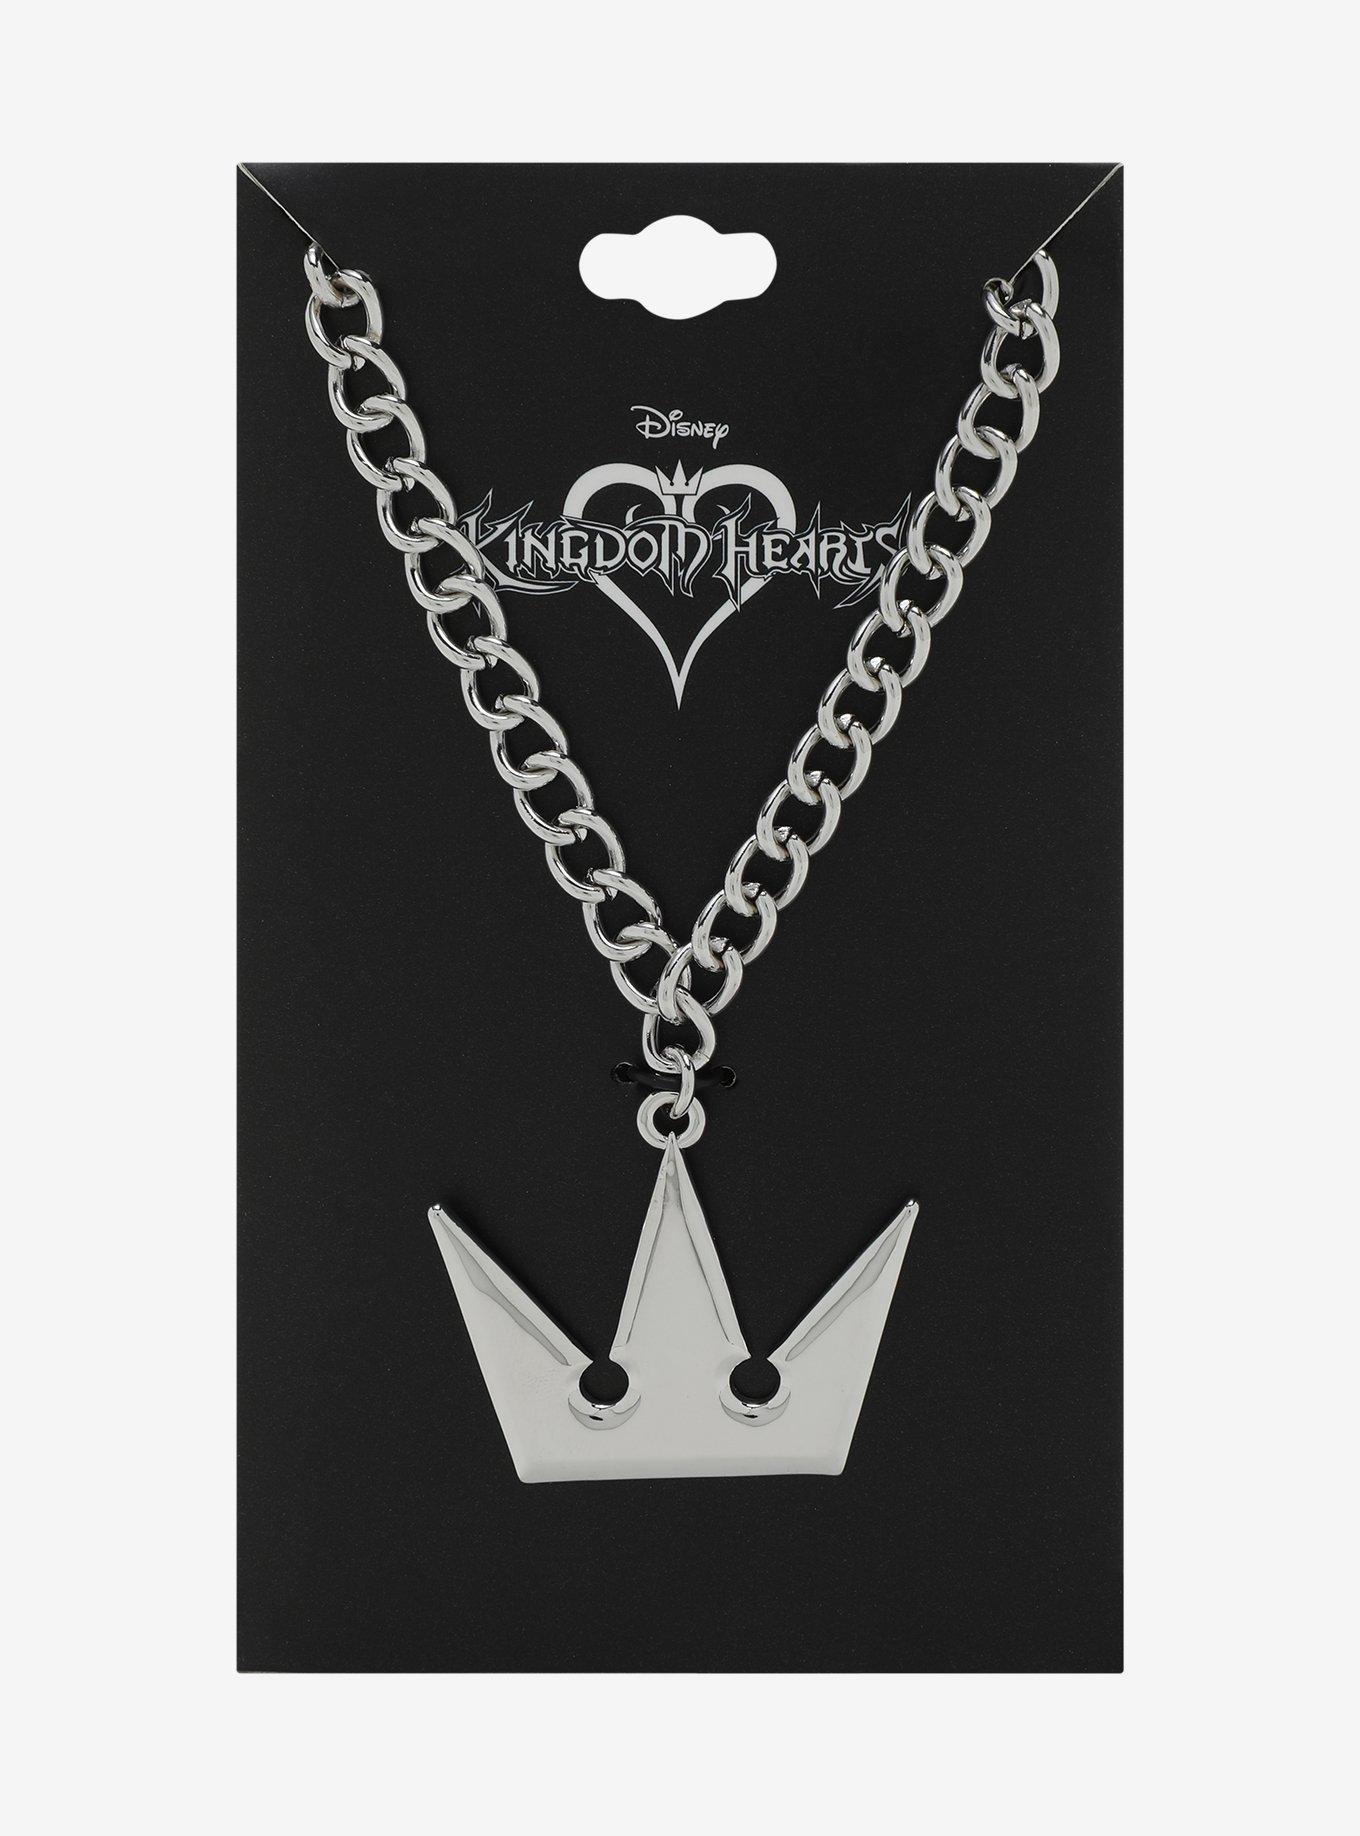 Disney Kingdom Hearts Sora Crown Replica Necklace, , hi-res